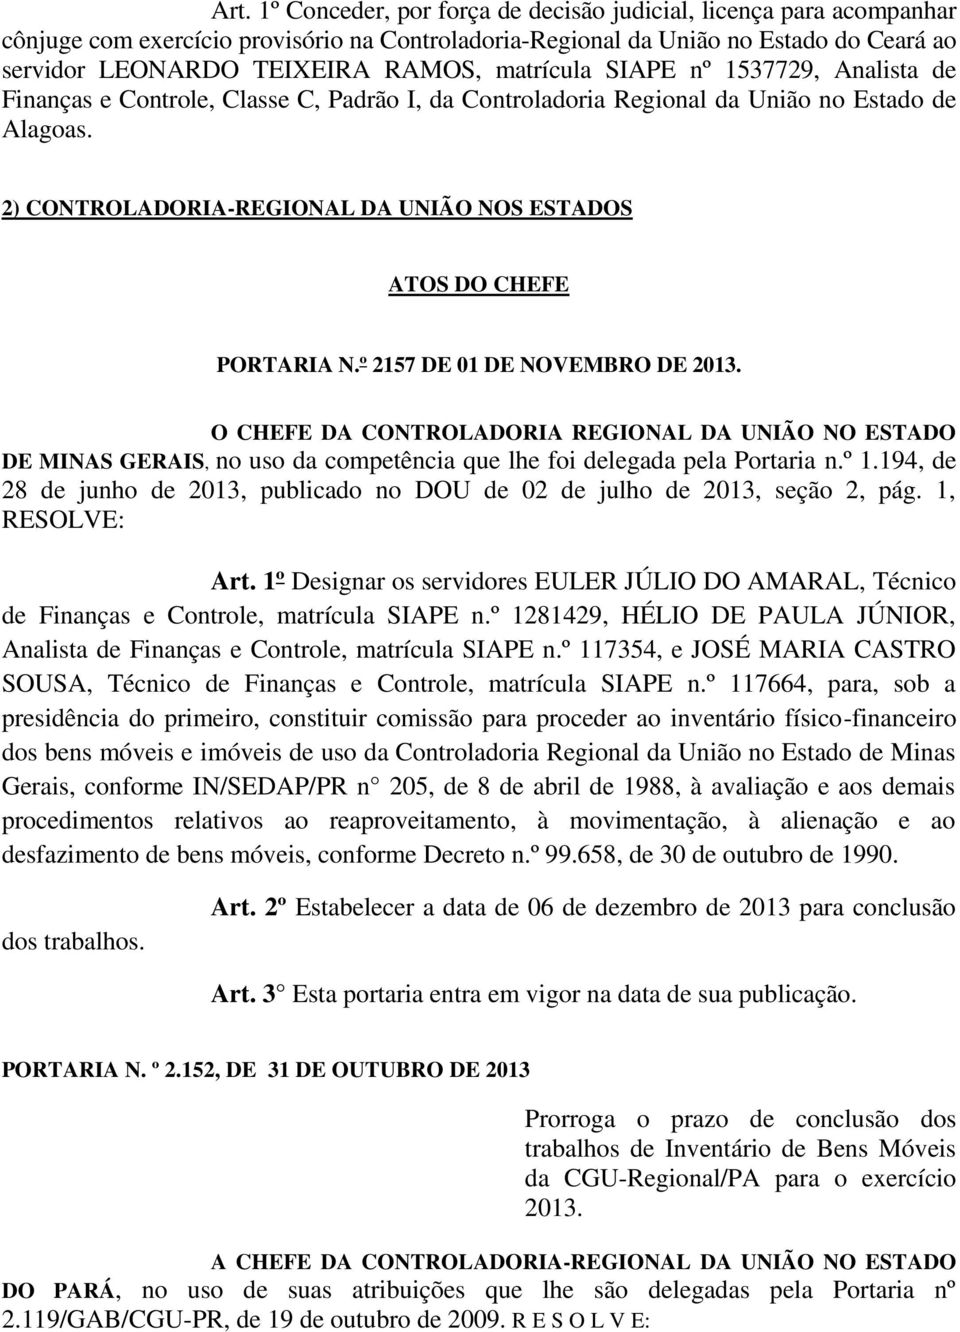 2) CONTROLADORIA-REGIONAL DA UNIÃO NOS ESTADOS ATOS DO CHEFE PORTARIA N.º 2157 DE 01 DE NOVEMBRO DE 2013.